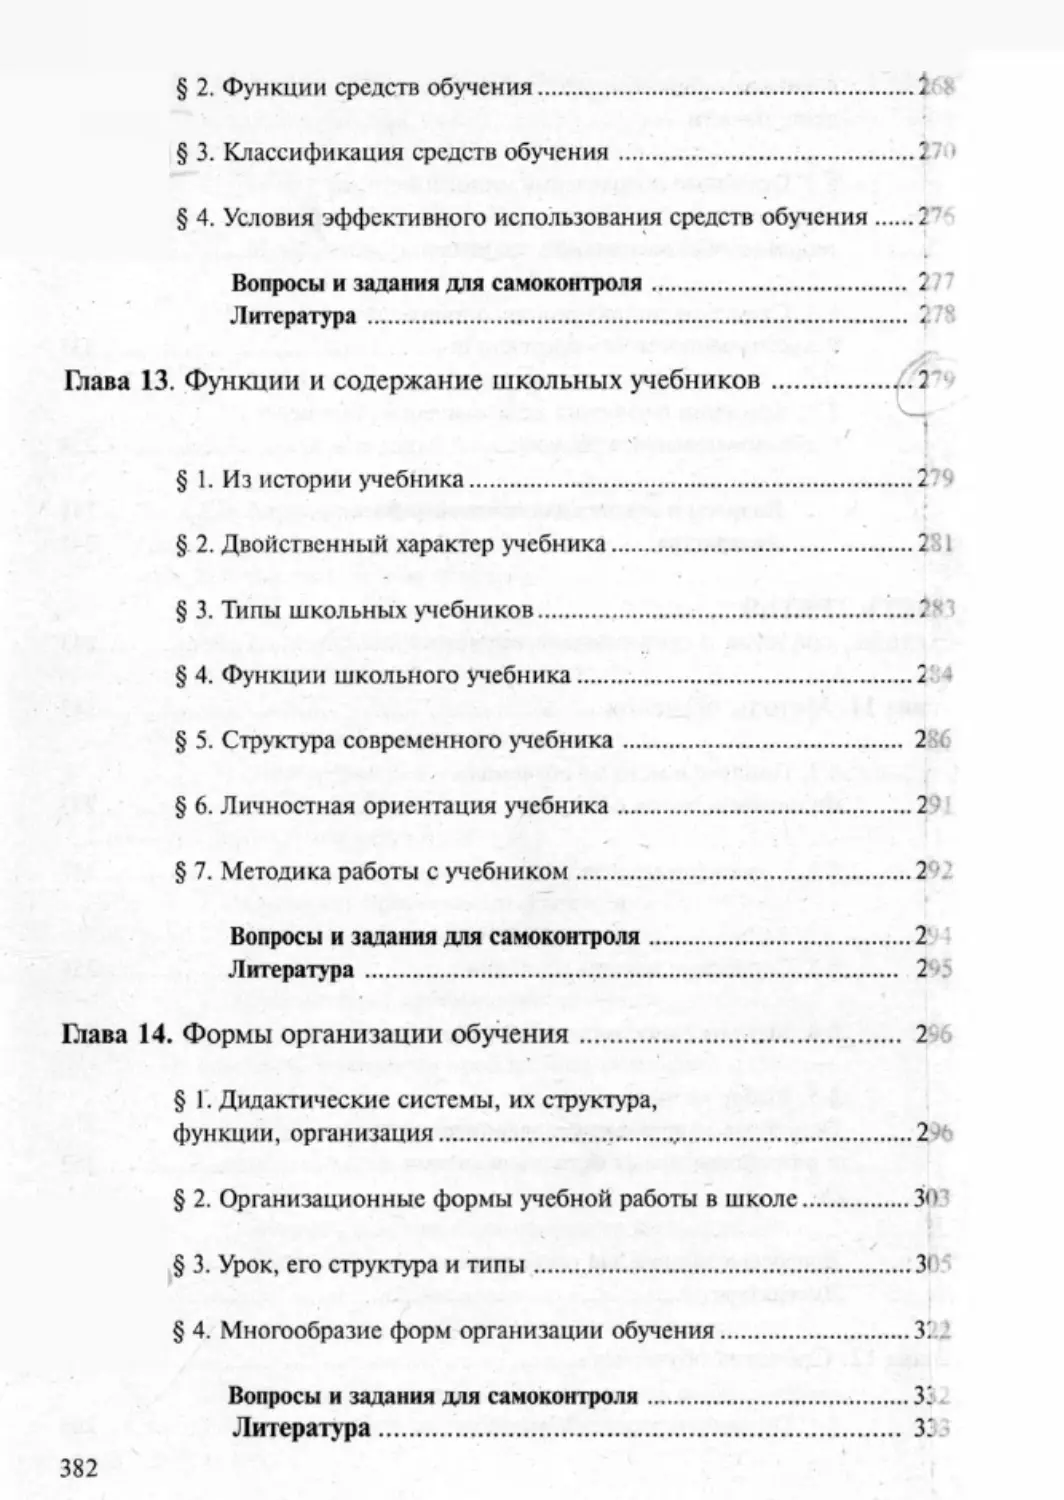 Загрекова Л.В., Николаева В.В - 0383